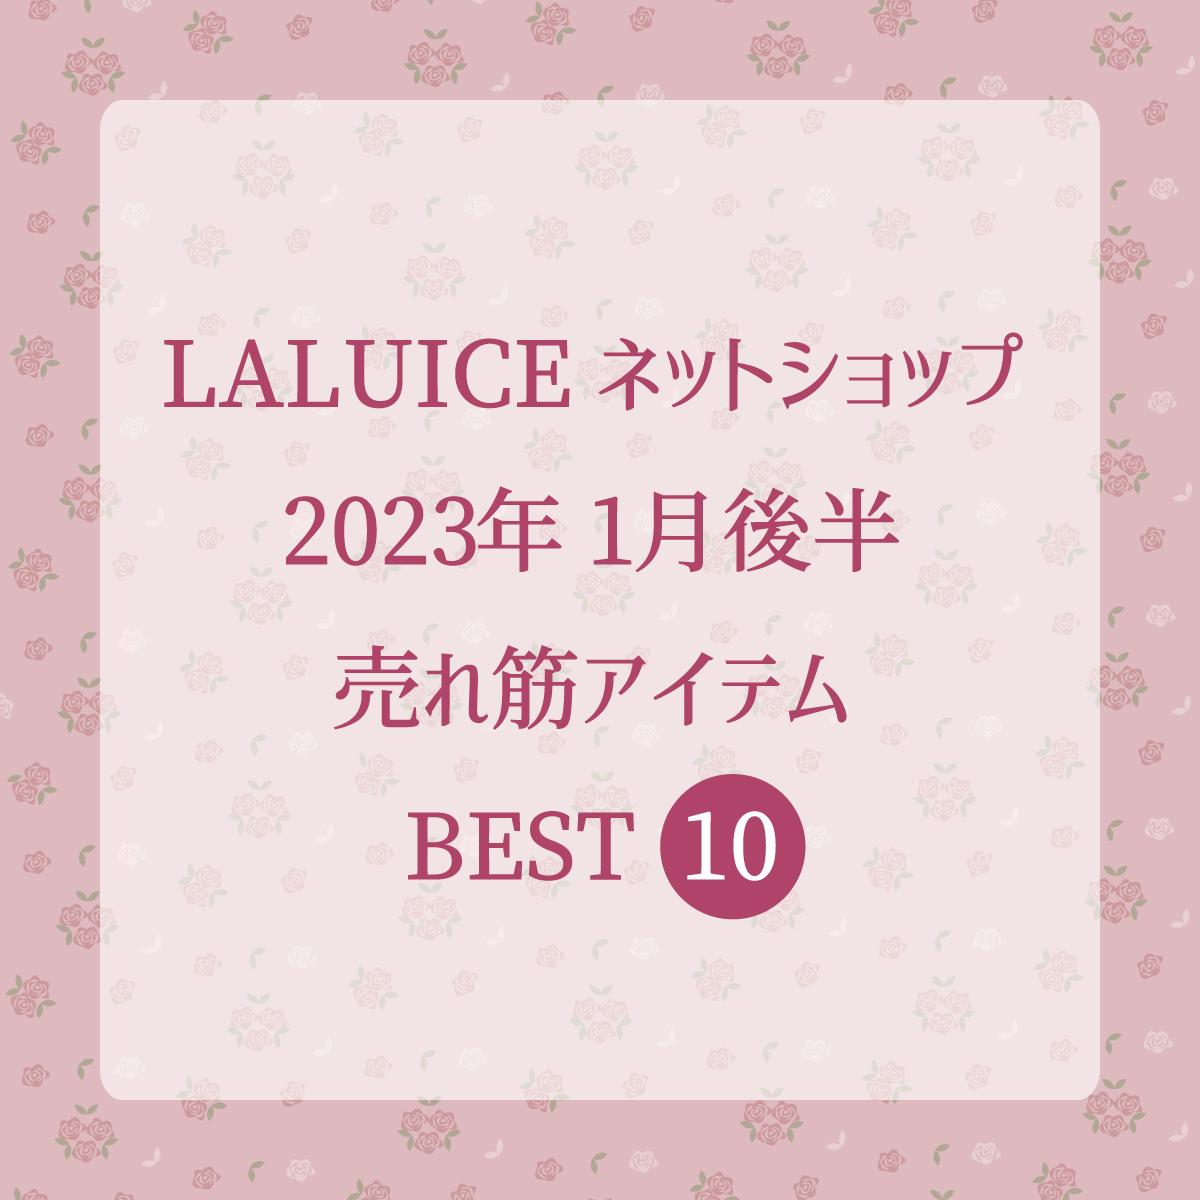 2023年1月後半(1/16～1/31)LALUICEネットショップ売れ筋アイテム BEST10